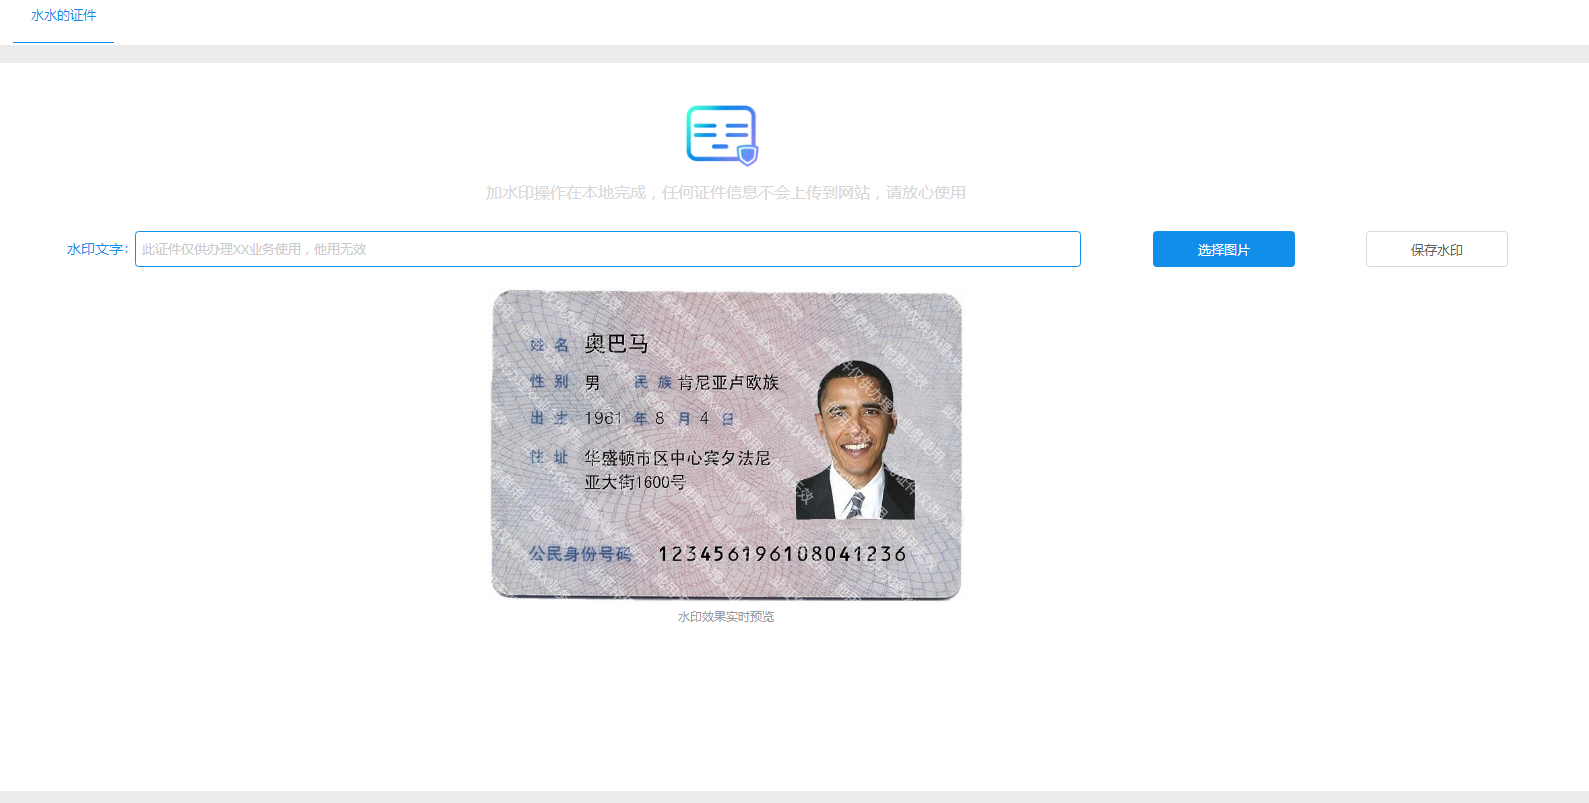 身份证在线打水印工具网站源码，防止身份证被盗用